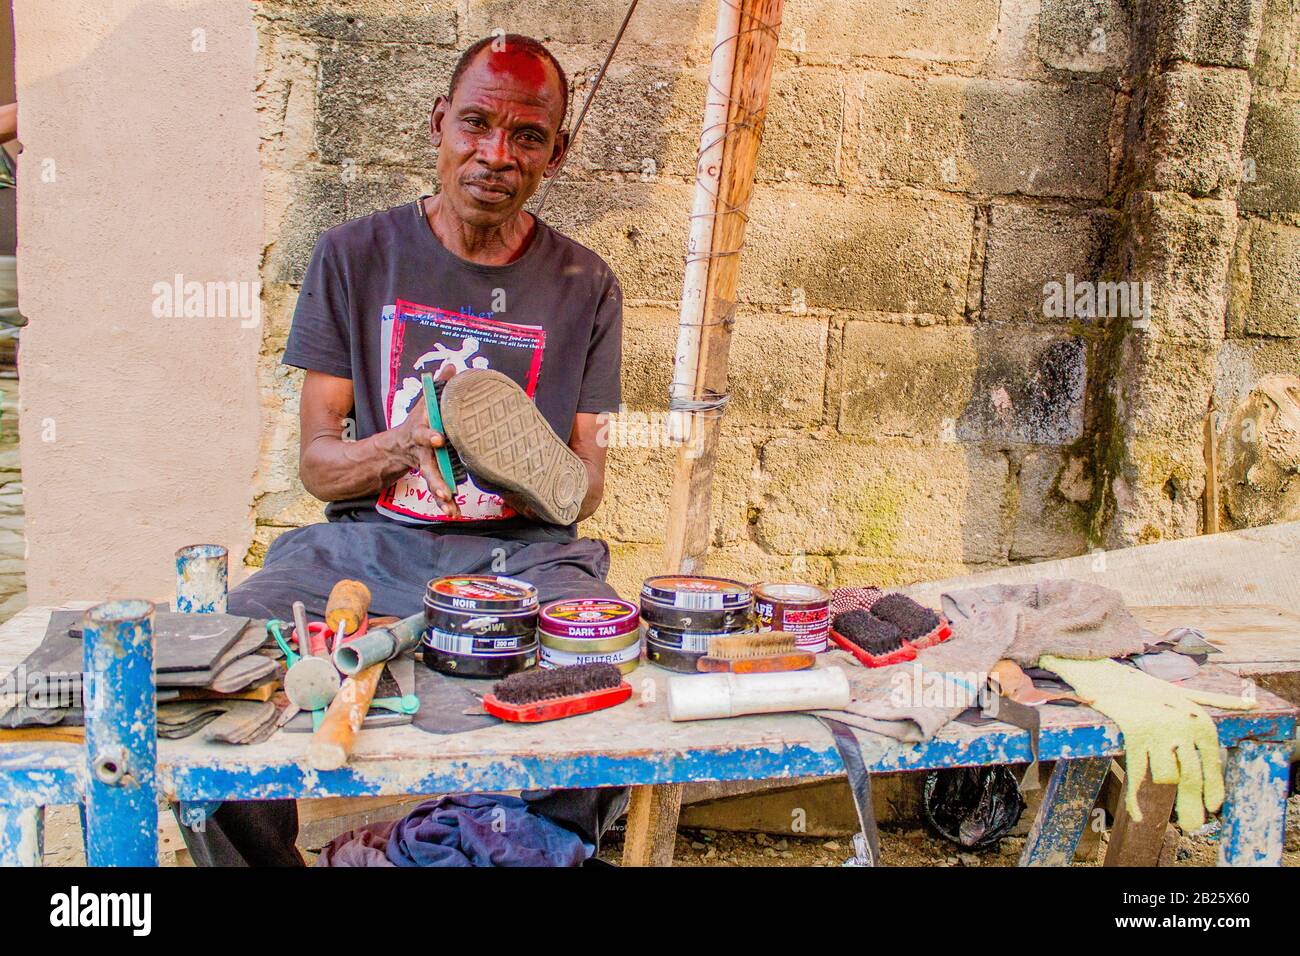 Un mousqueton et un réparateur de chaussures au travail dans une rue au Nigeria. Banque D'Images